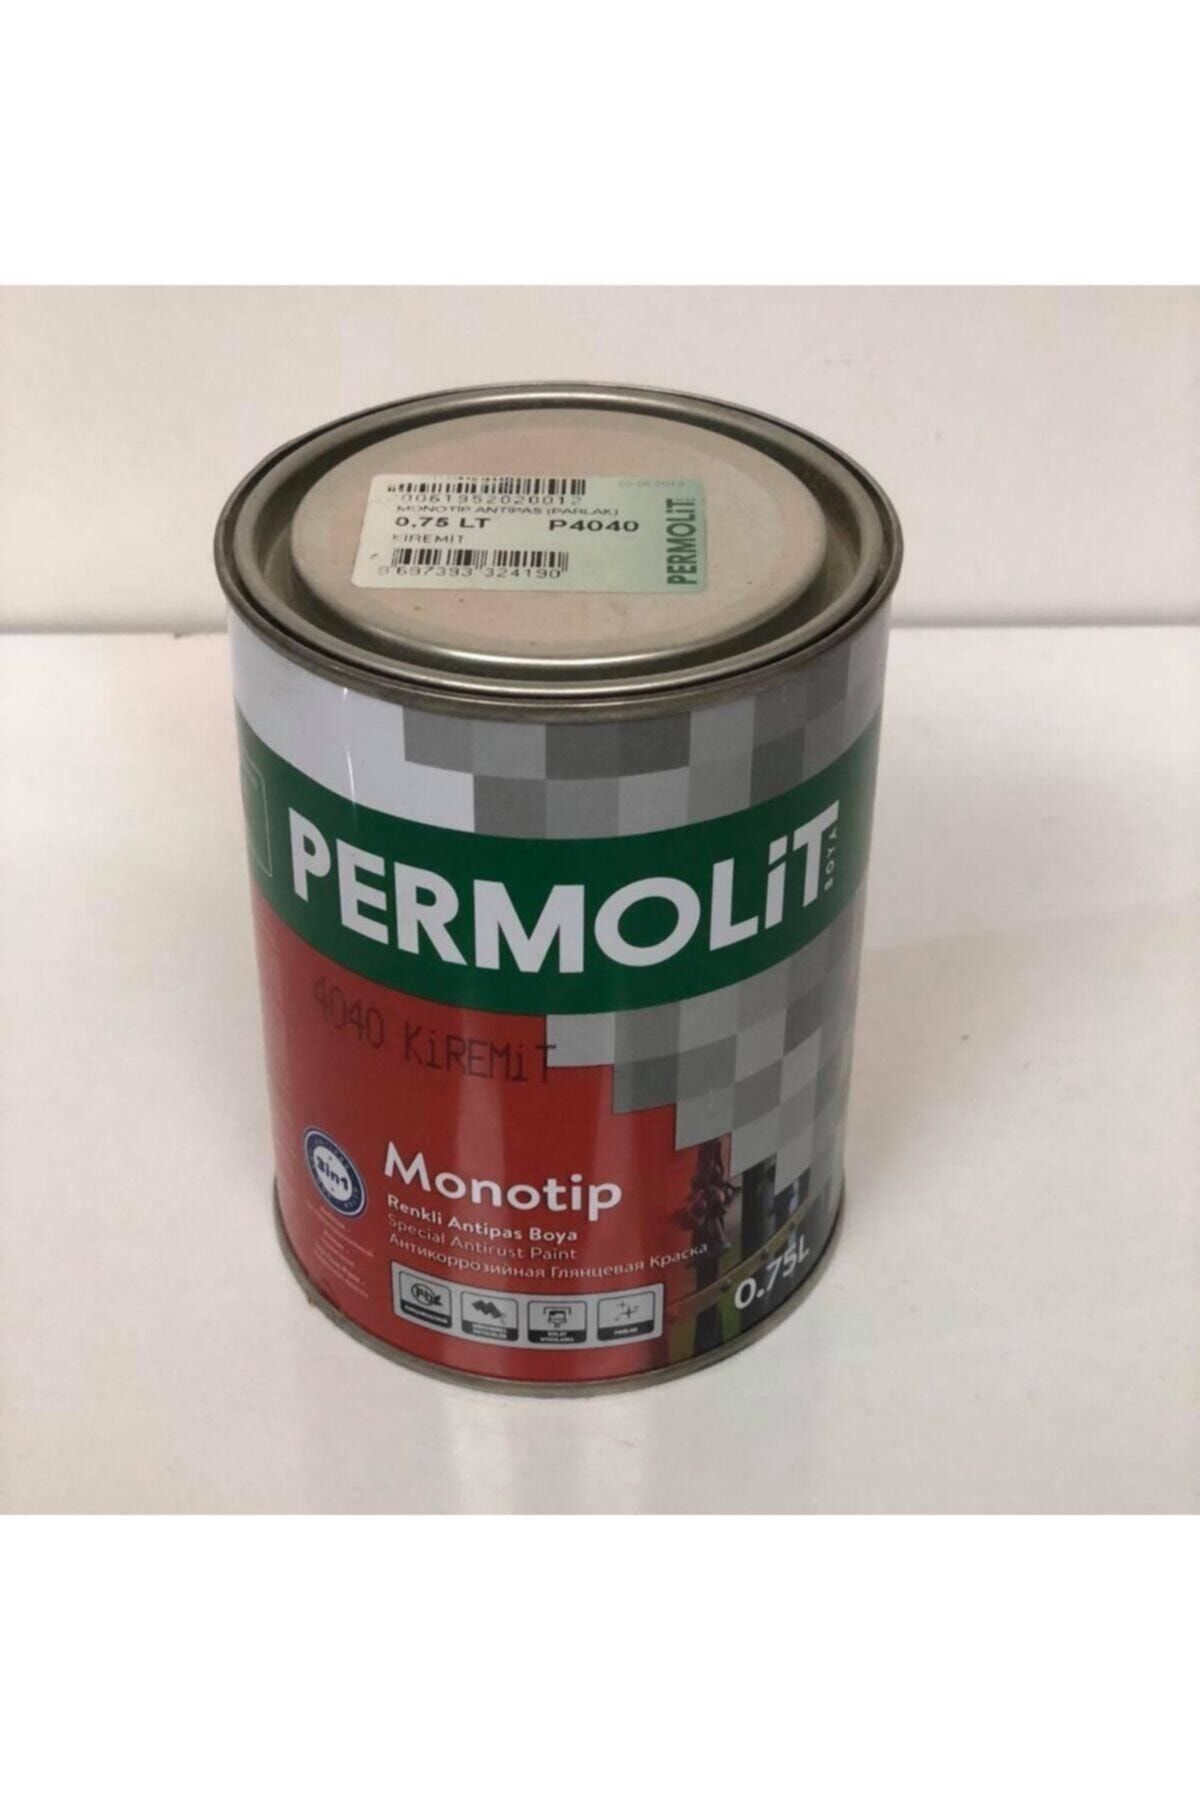 Permolit Monotip Yağlı Boya Beyaz 0,75 Lt